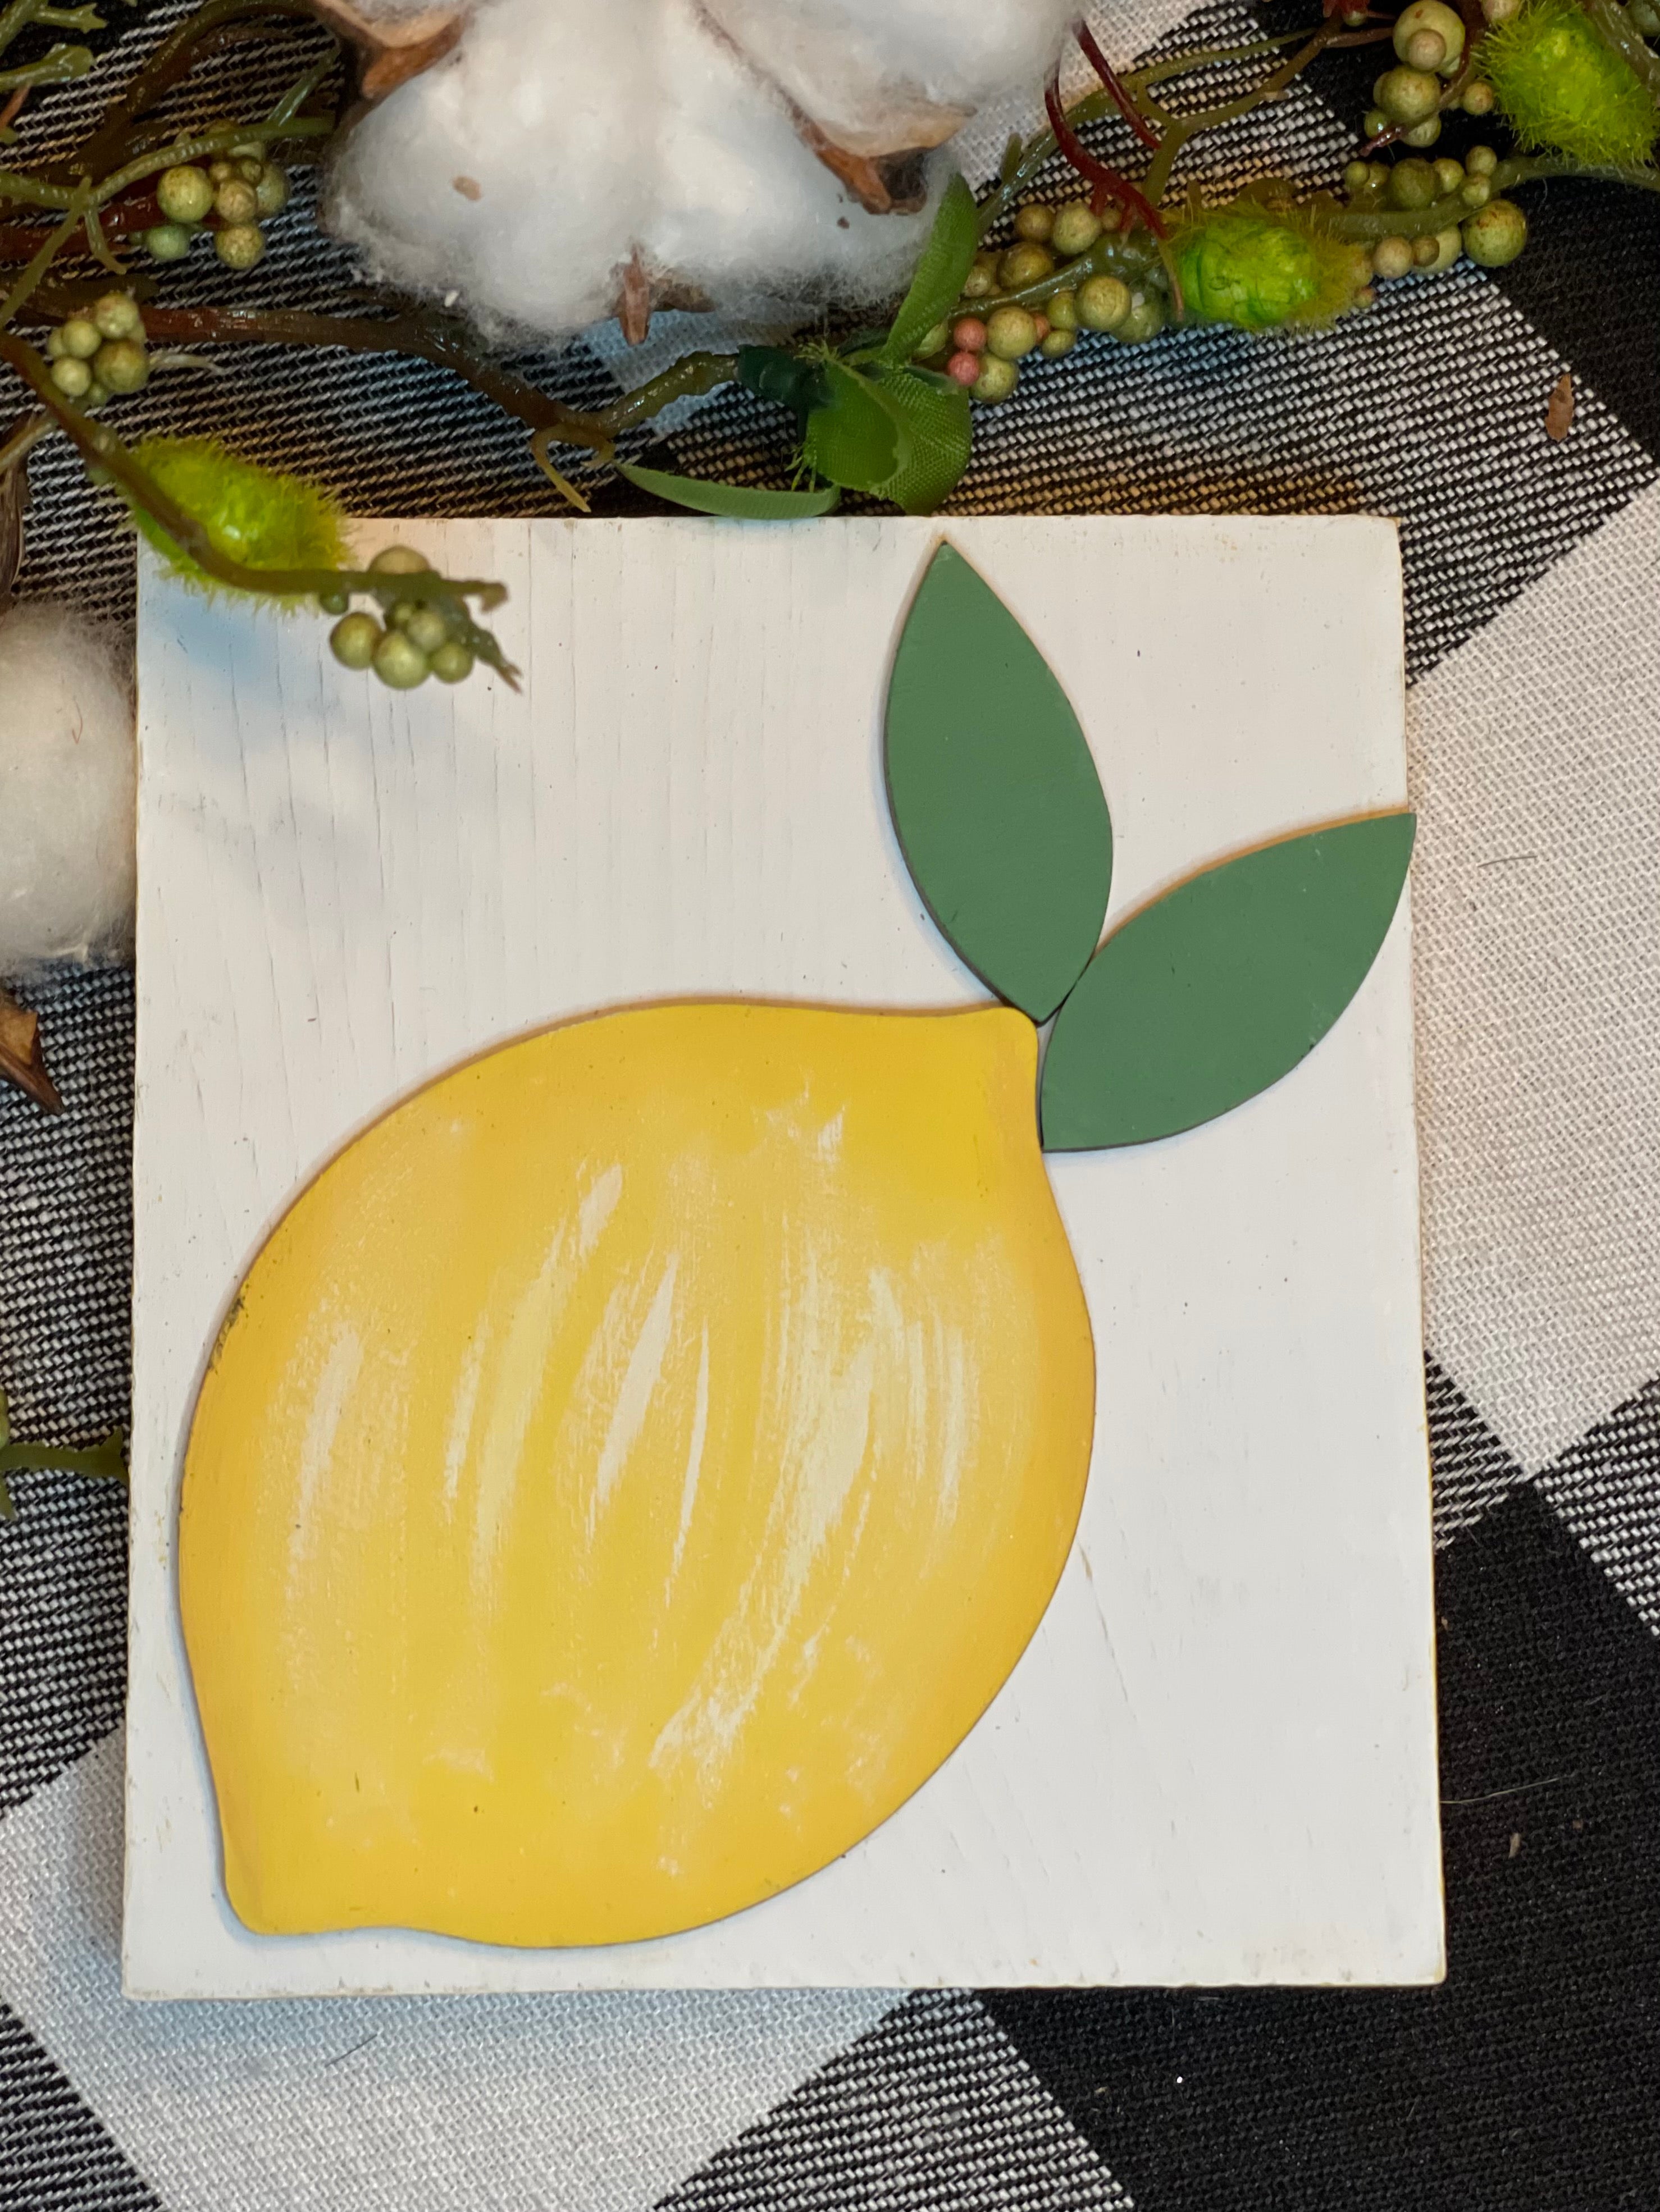 3D Lemon Mini Wood Sign shows the white 3D lemon cutout with floral and cotton embellishments.